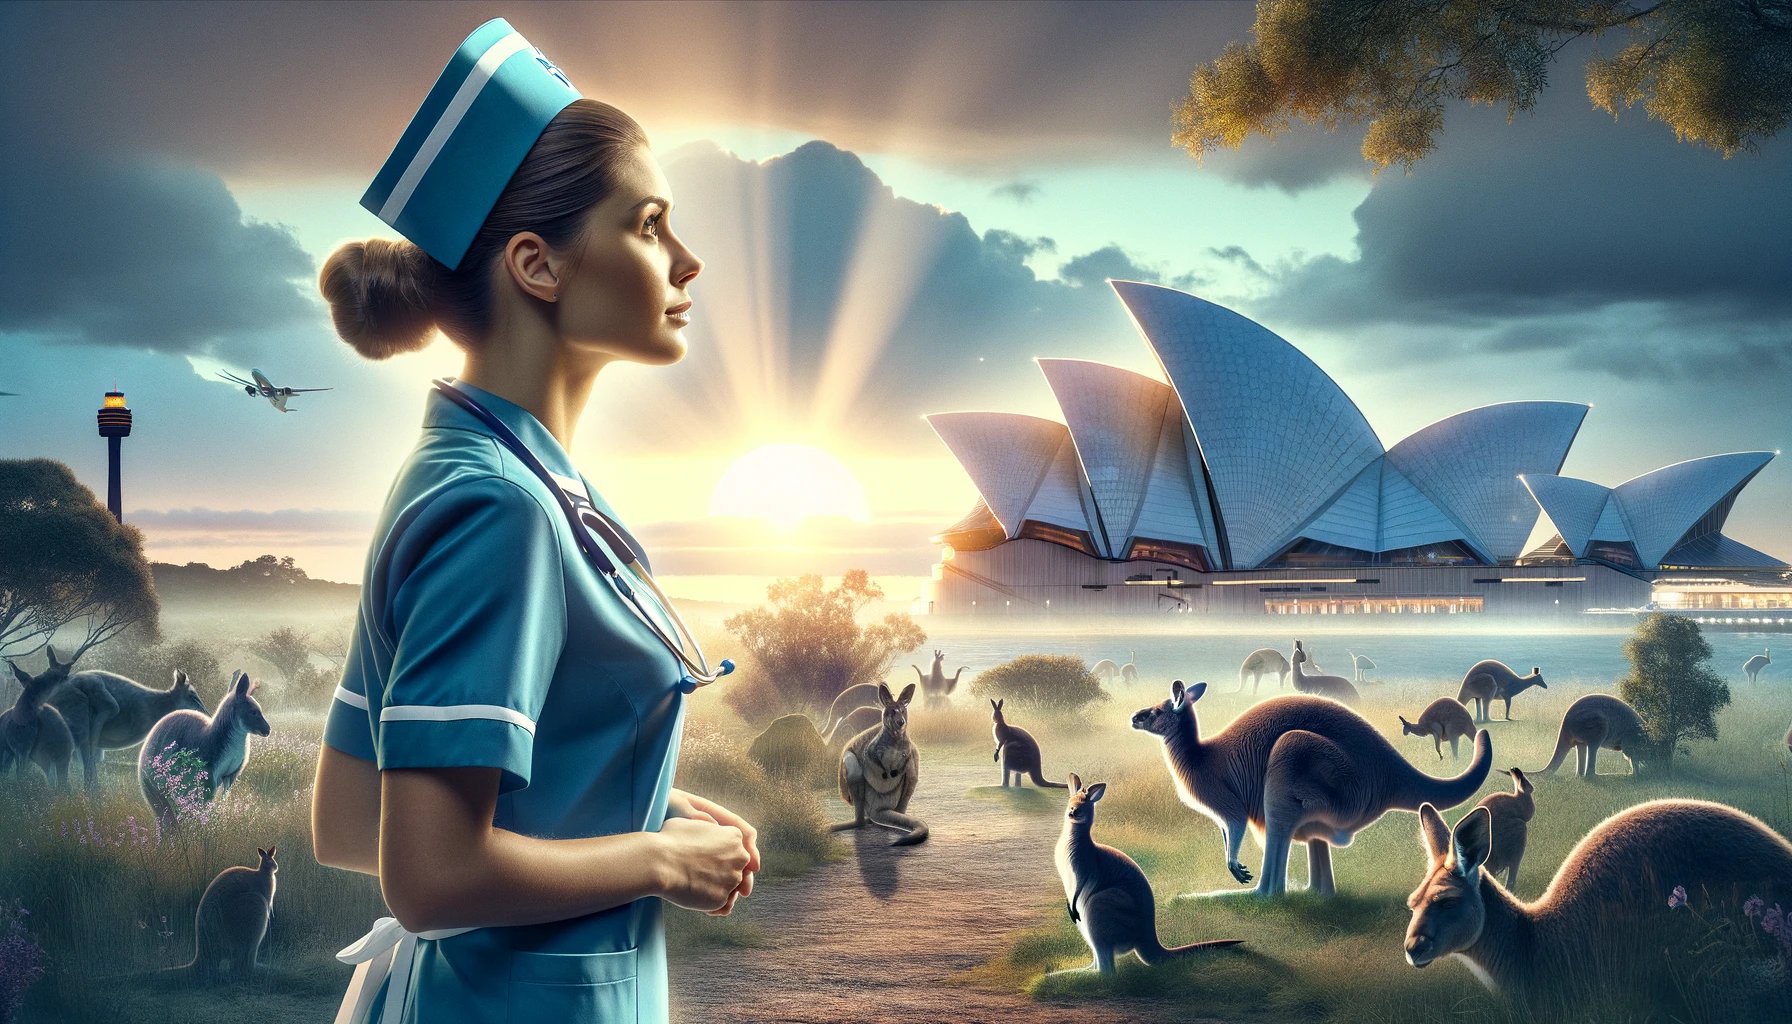 una enfermera contempla nuevas oportunidades en Australia